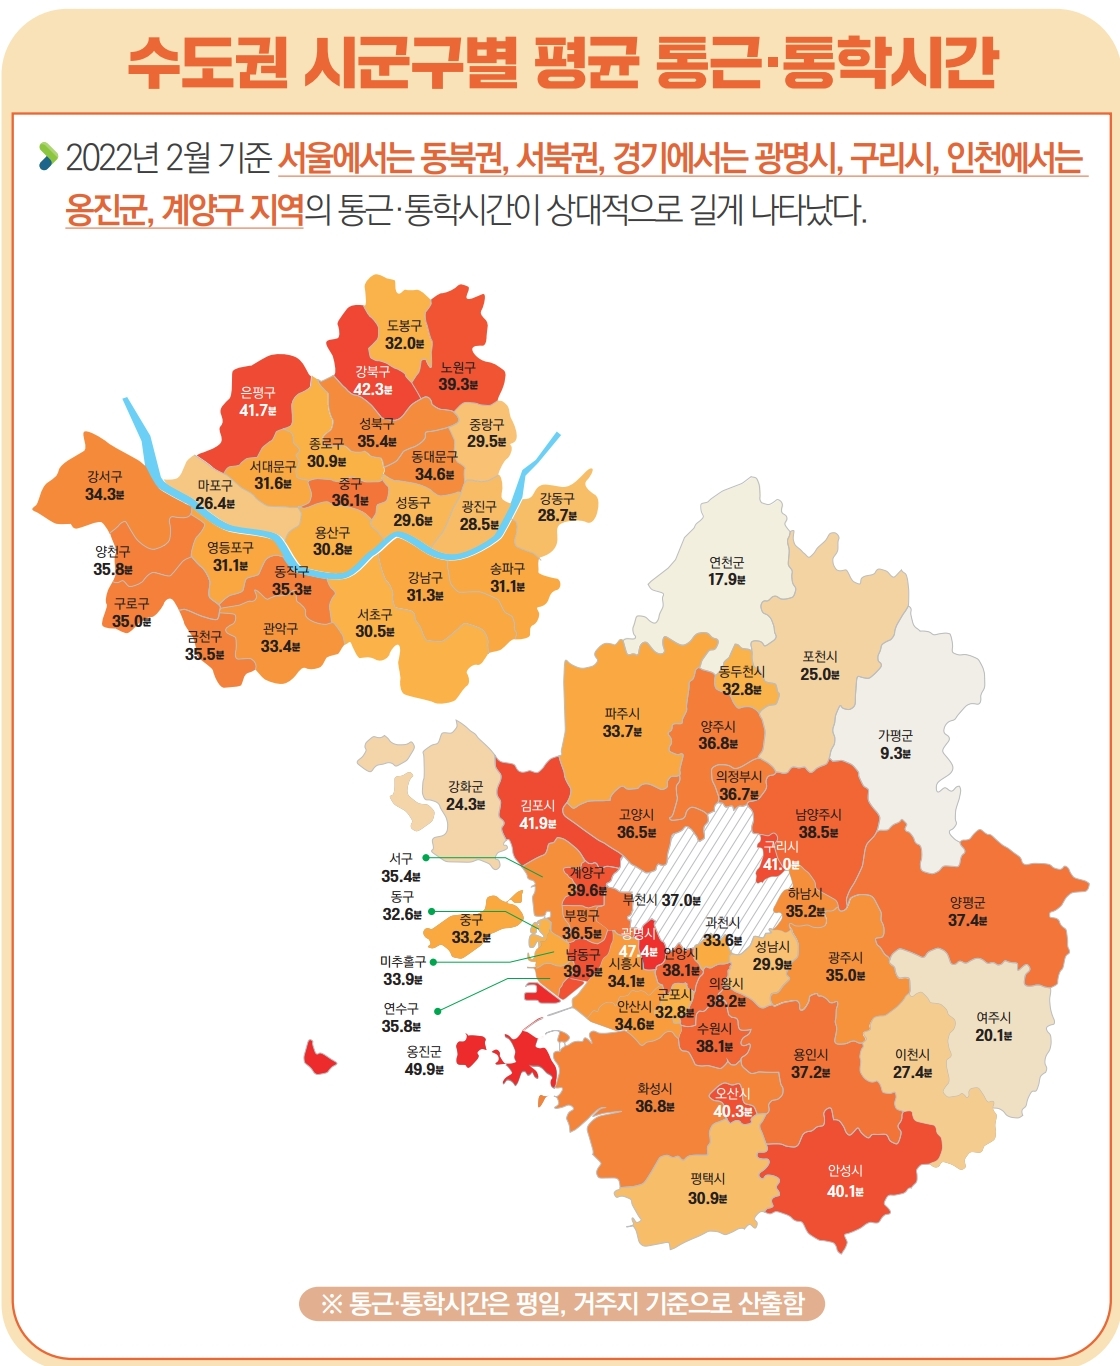 2022년 2월 기준 서울에서는 동북권, 서북권, 경기에서는 광명시, 구리시, 인천에서는 옹진군, 계양구 지역의 통근·통학시간이 상대적으로 길게 나타났다. 자세한 내용은 아래 텍스트 확인